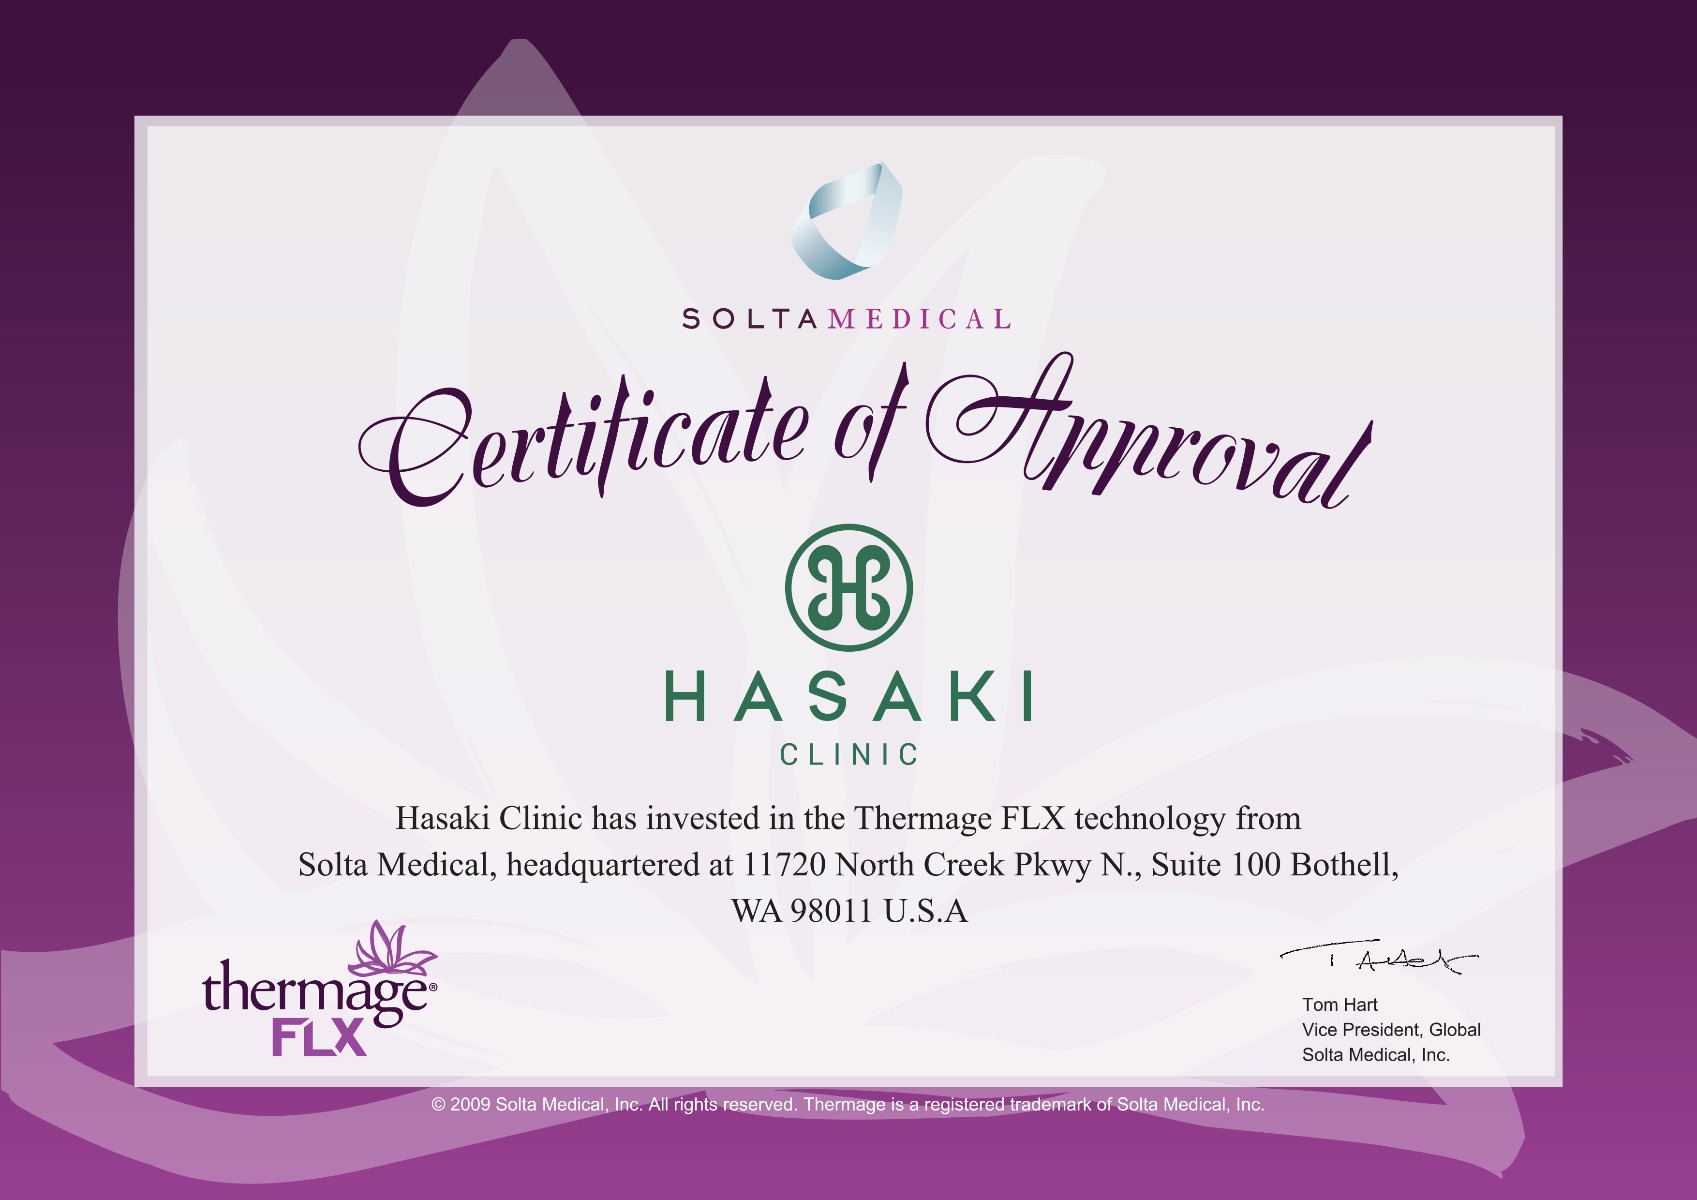 Săn da, xoá nhăn Thermage FLX chính hãng tại Hasaki Clinic